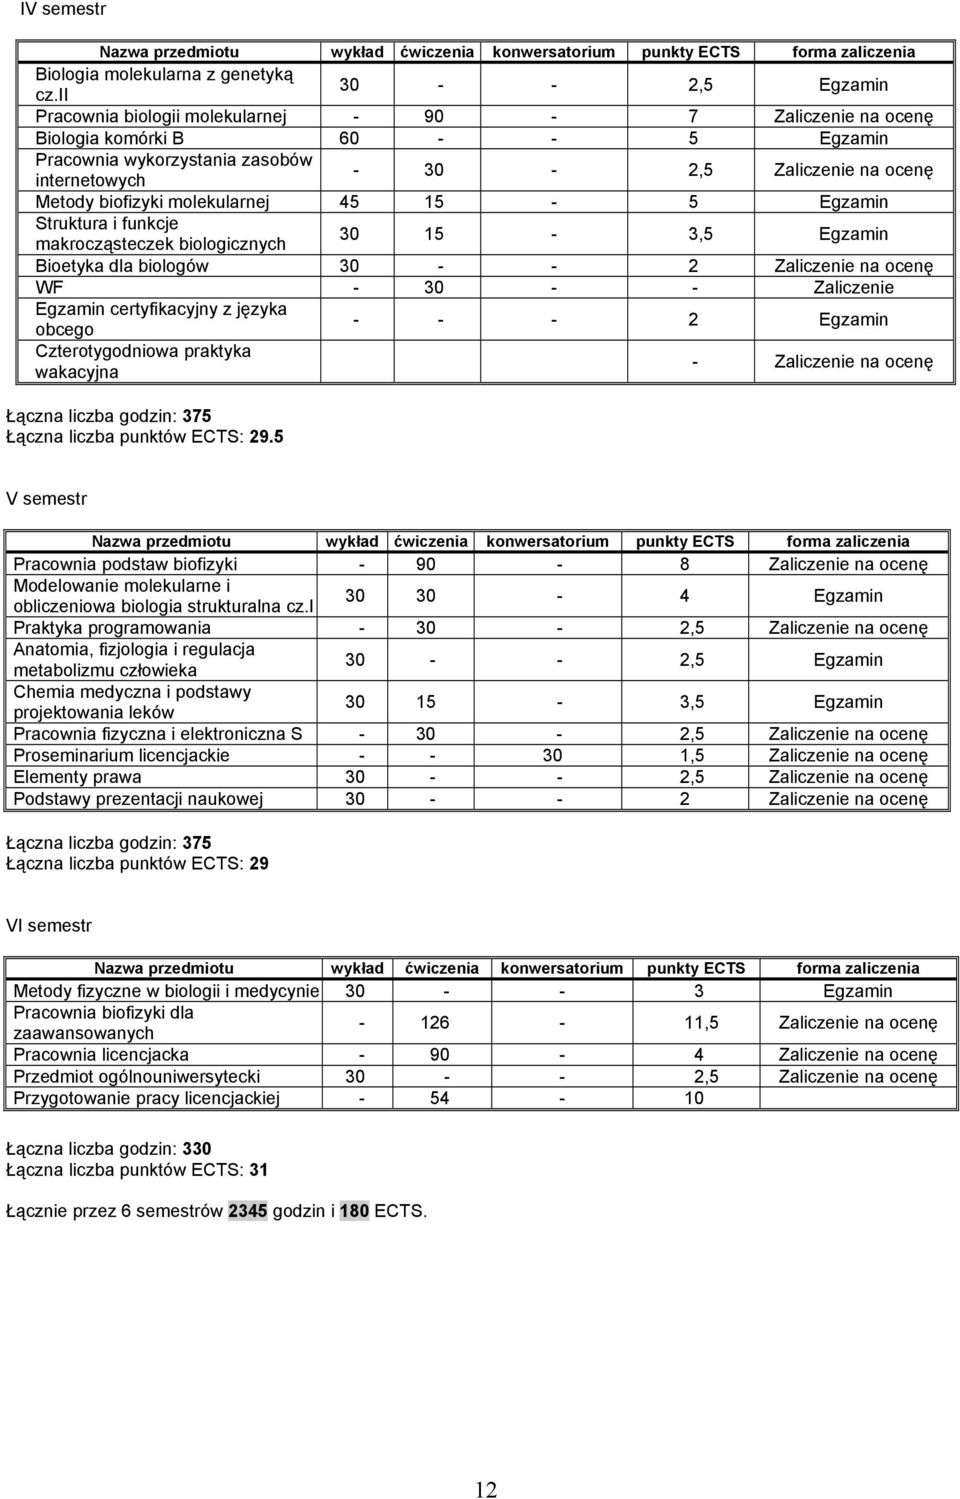 biofizyki molekularnej 45 15-5 Egzamin Struktura i funkcje makrocząsteczek biologicznych 30 15-3,5 Egzamin Bioetyka dla biologów 30 - - 2 Zaliczenie na ocenę WF - 30 - - Zaliczenie Egzamin